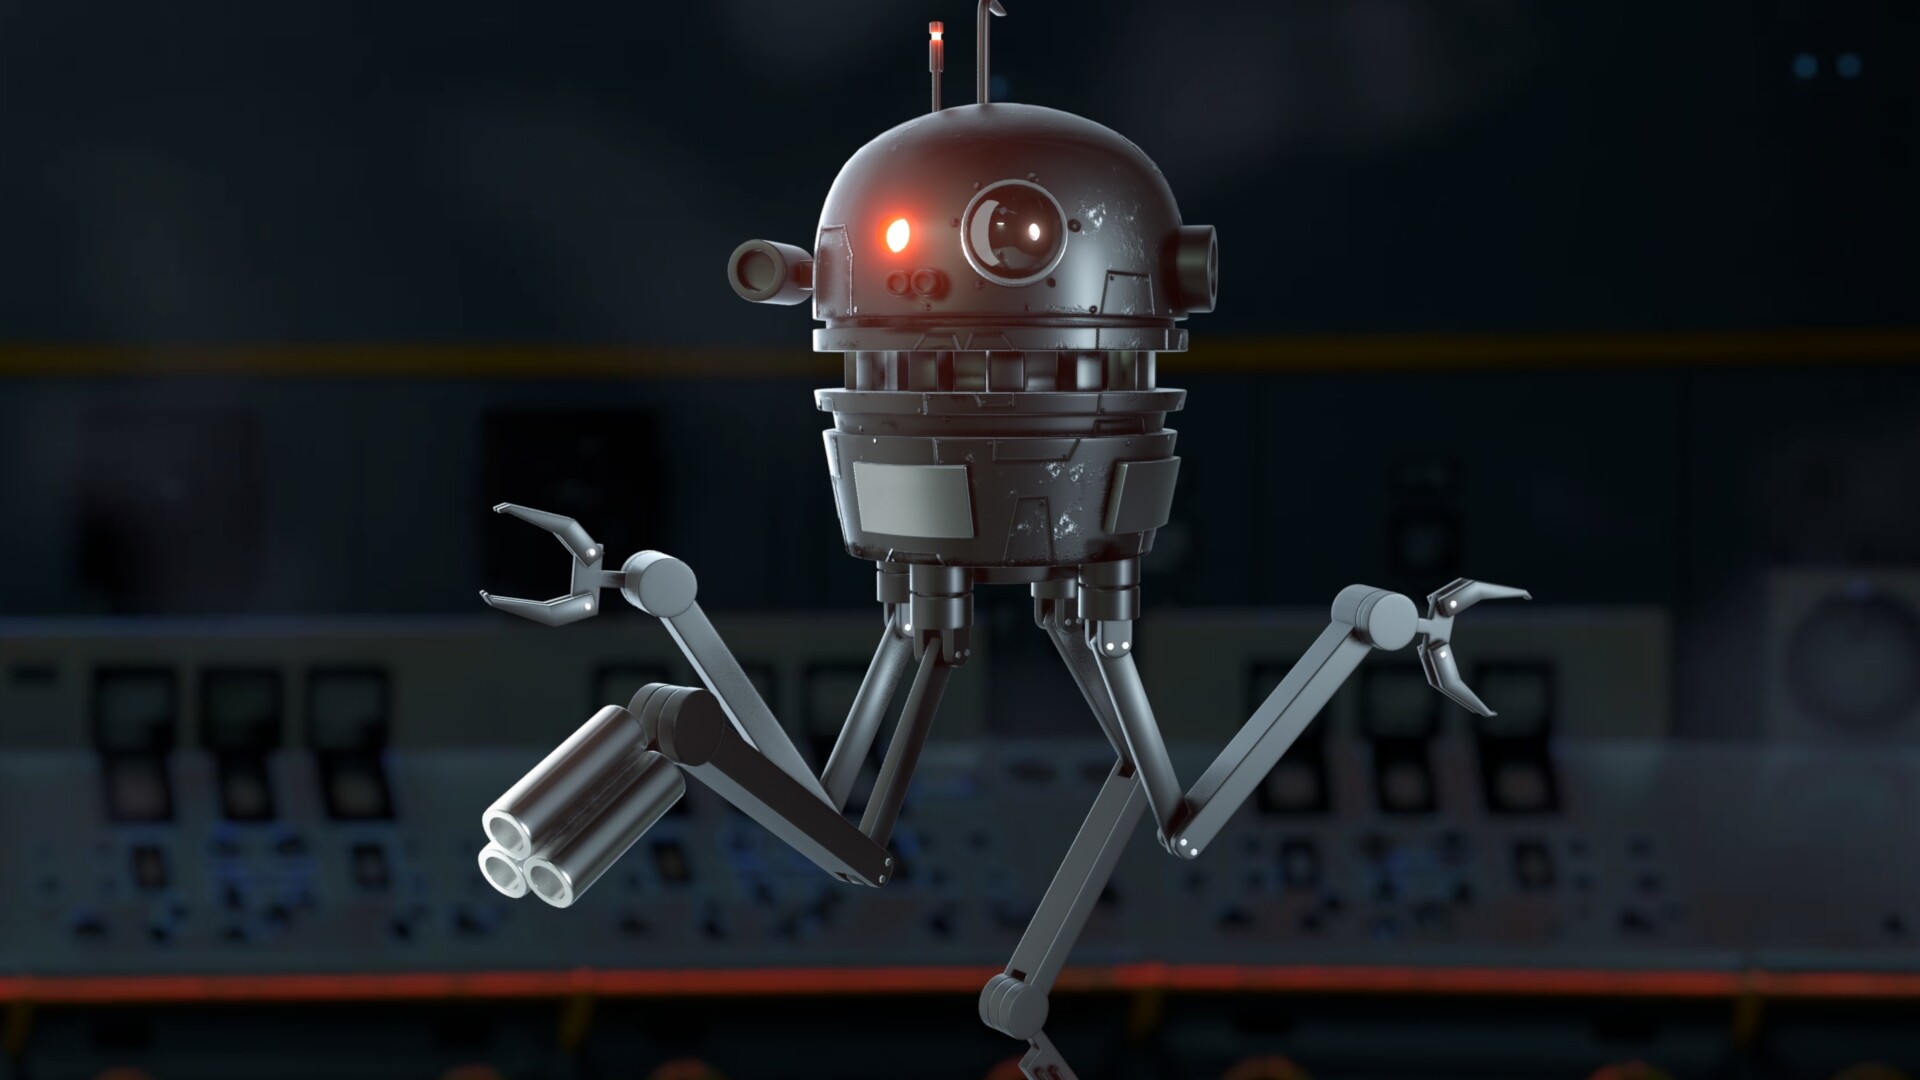 beruset Burger Udsigt Sci-Fi Robot Drone - Finished Projects - Blender Artists Community